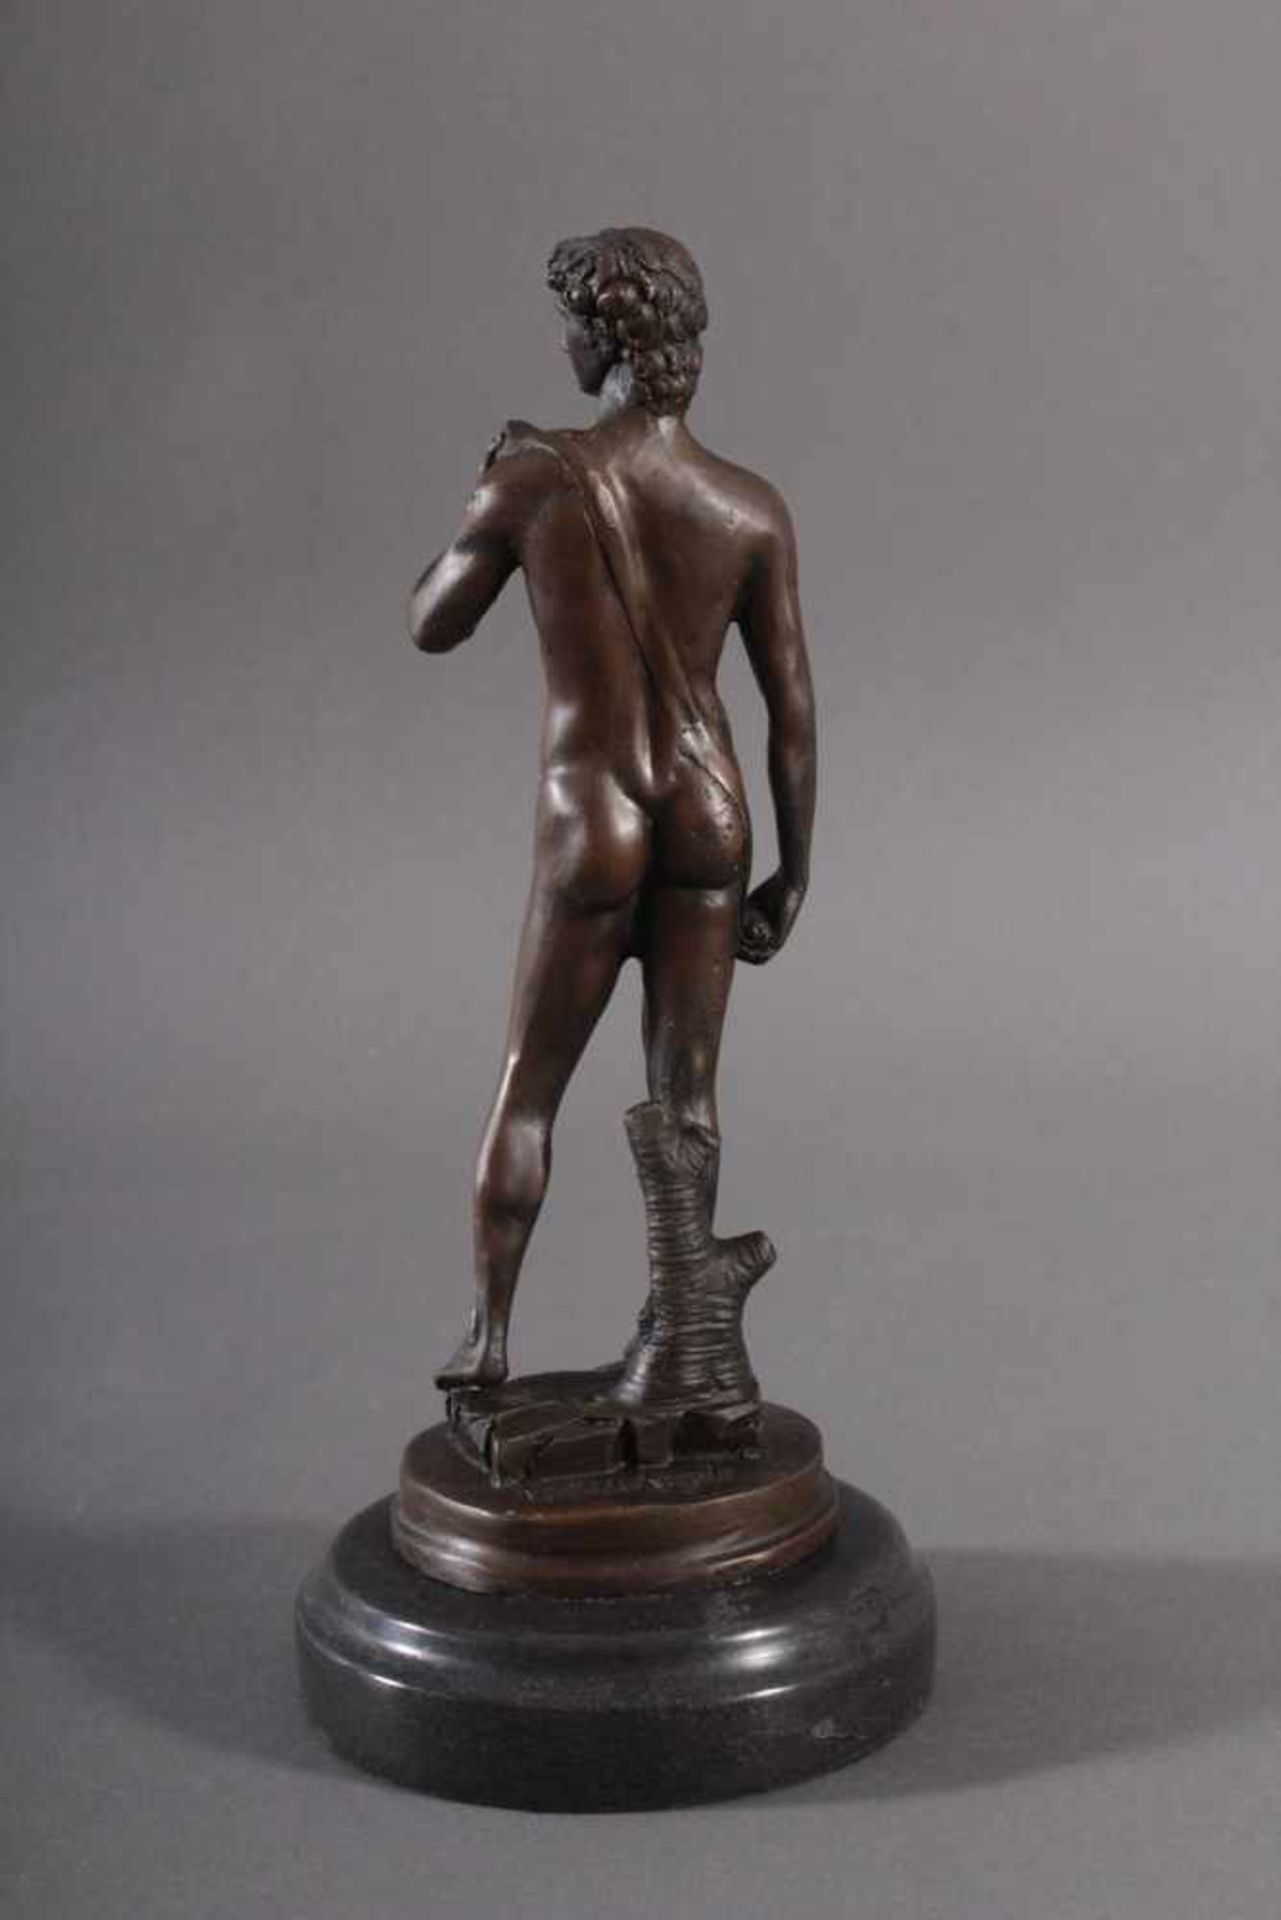 Bronzefigur nach Michelangelo (1475 - 1564), "David"Nachguss, stehende Figur auf runder Plinthe - Bild 2 aus 3